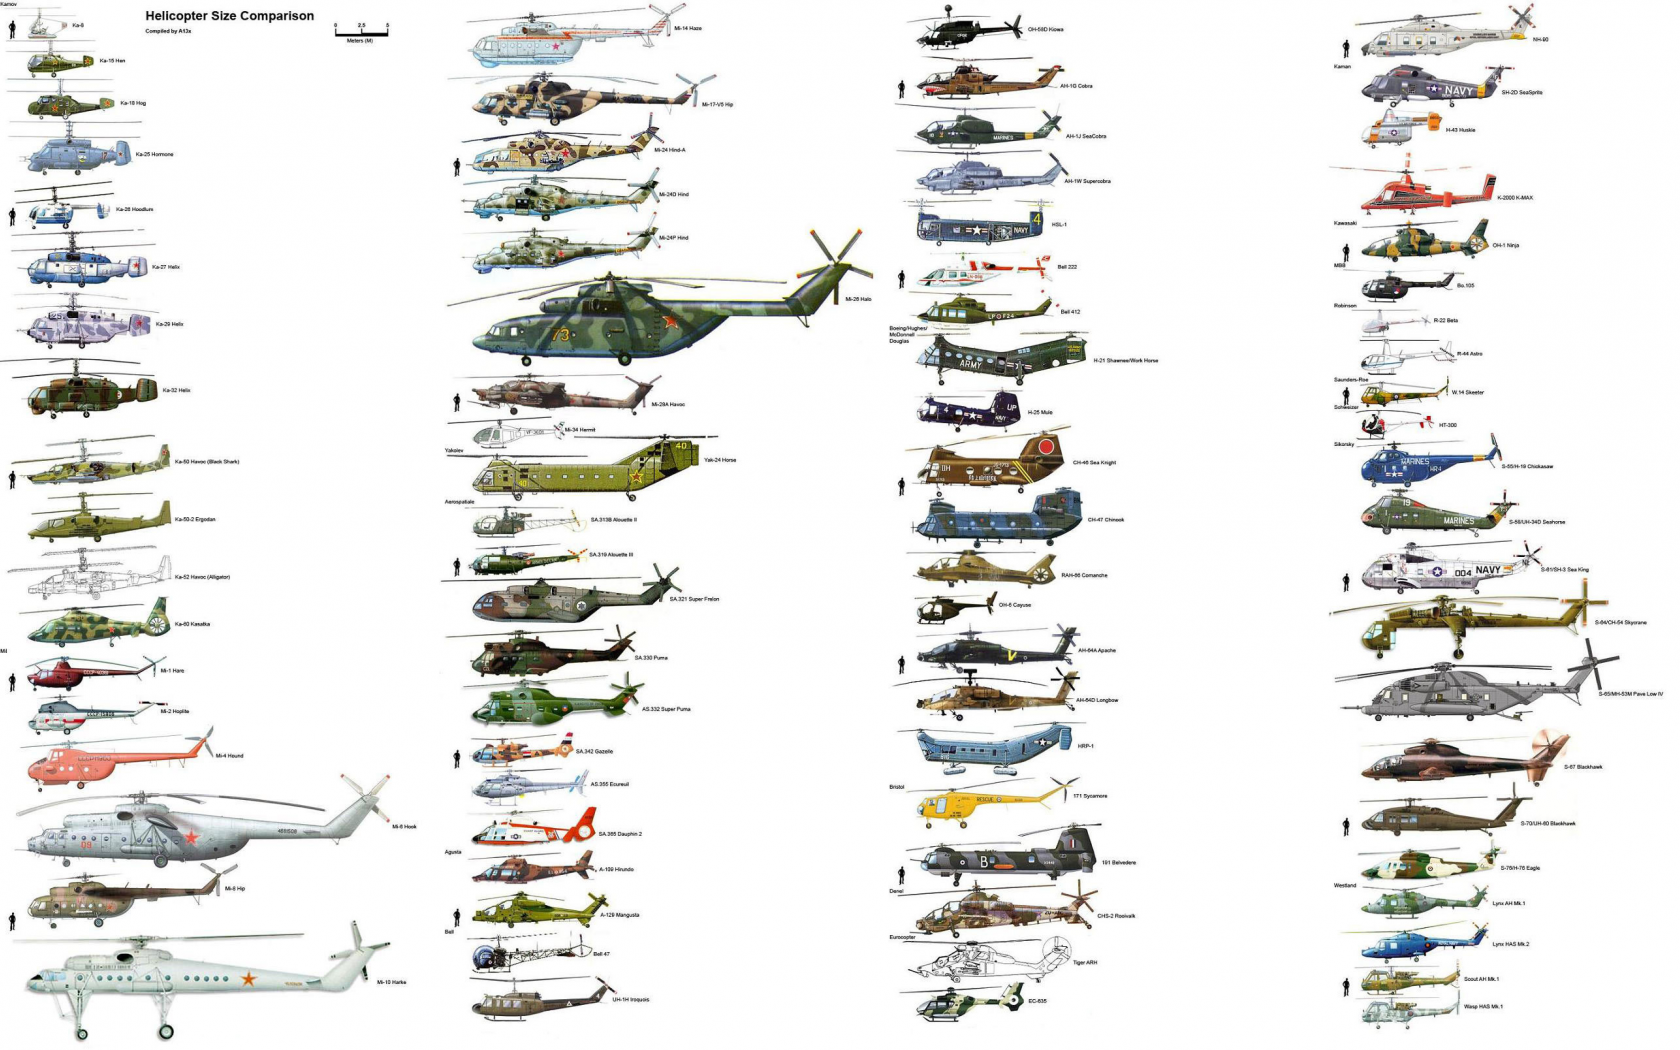 вертолеты, типы, схема, сравнение размеров